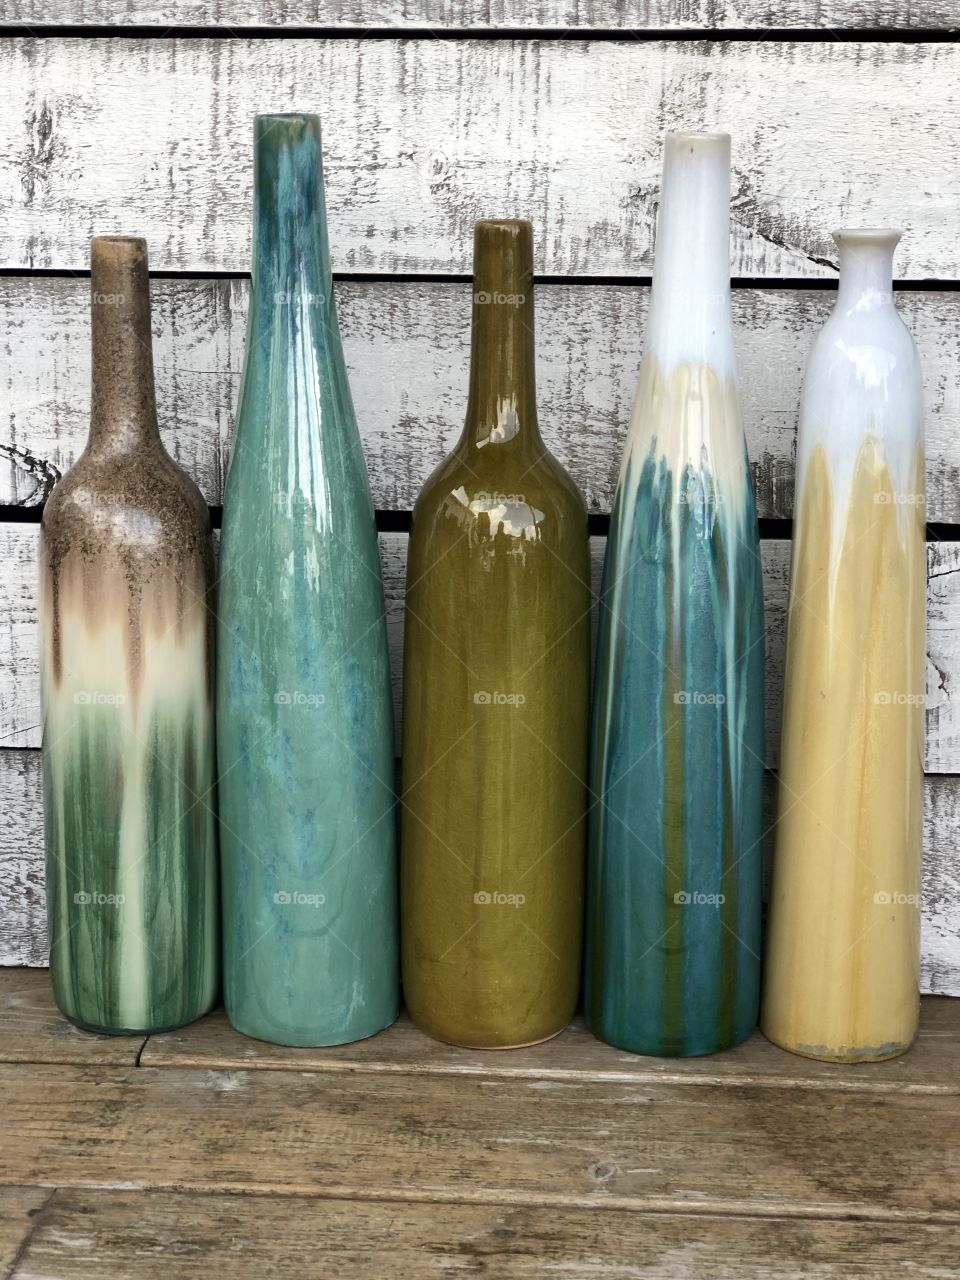 Colorful ceramic vases 